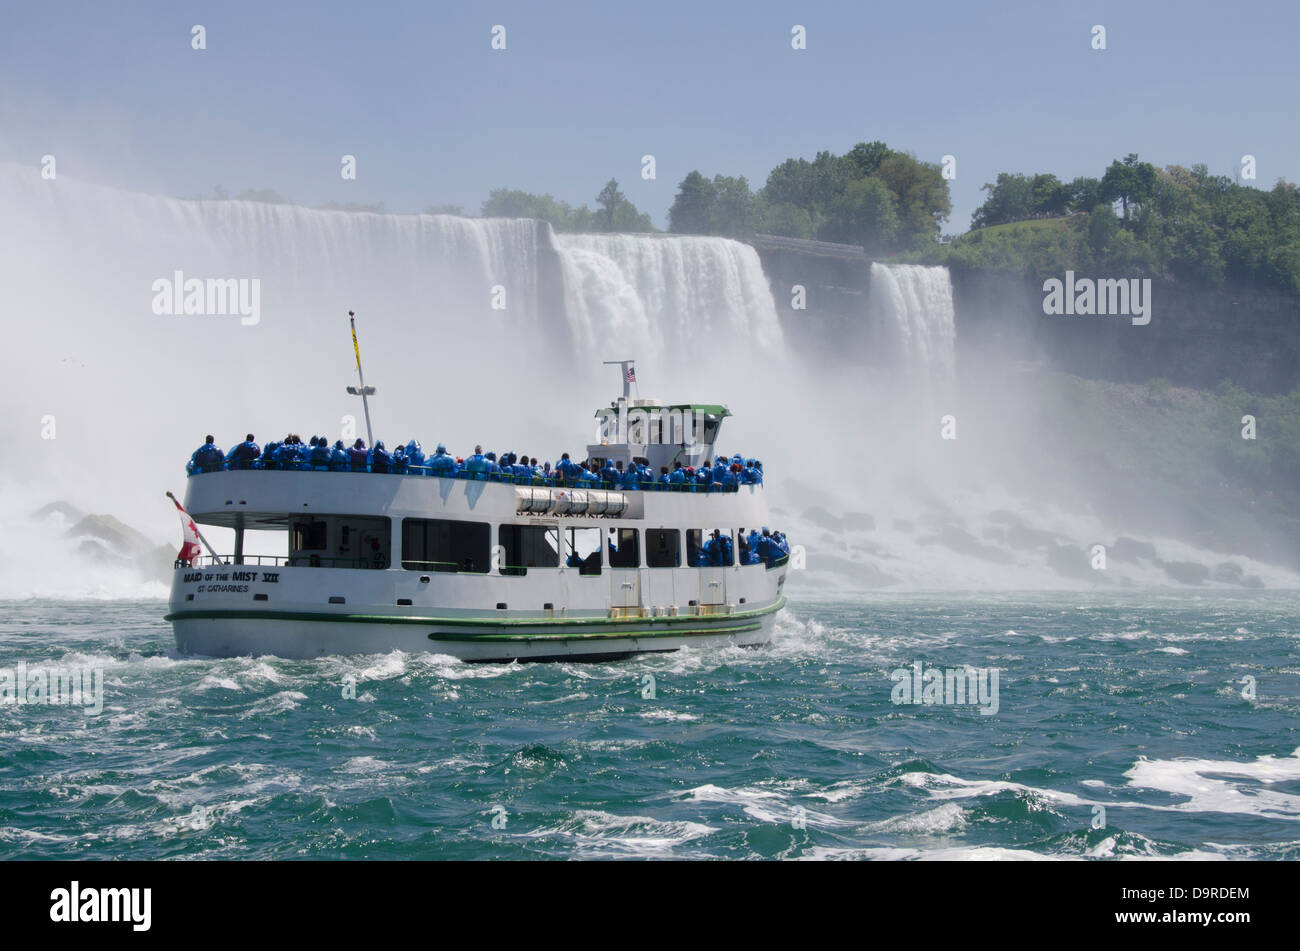 USA / Kanada, New York, Niagara Falls. USA Seite, Aussicht auf amerikanischen Wasserfälle mit Magd das Touristenboot Nebel. Stockfoto